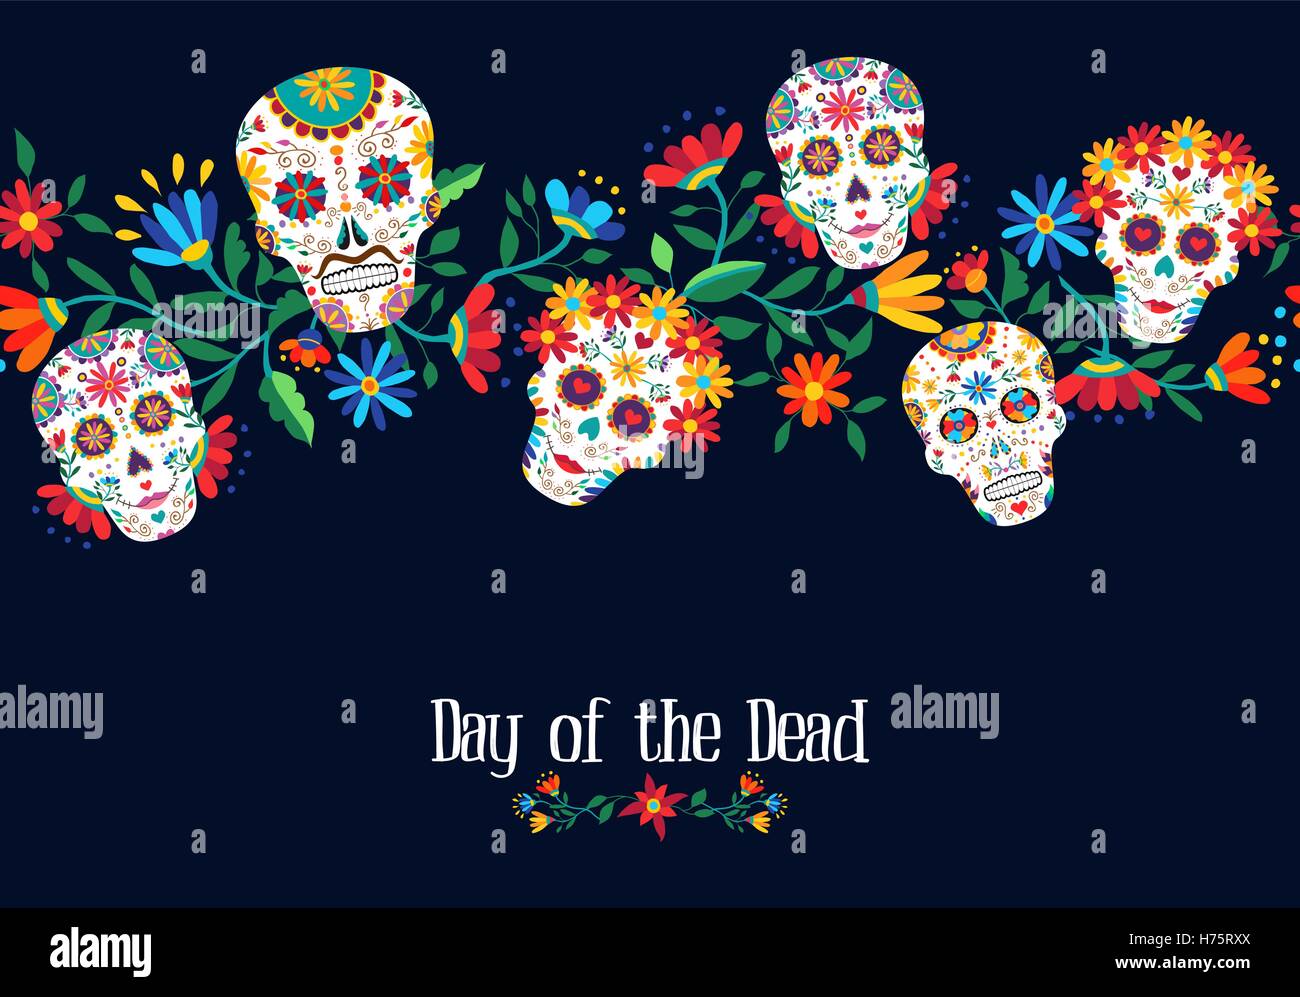 Le Jour des morts mexicain traditionnel avec illustration et décoration crânes floral background. Vecteur EPS10. Illustration de Vecteur